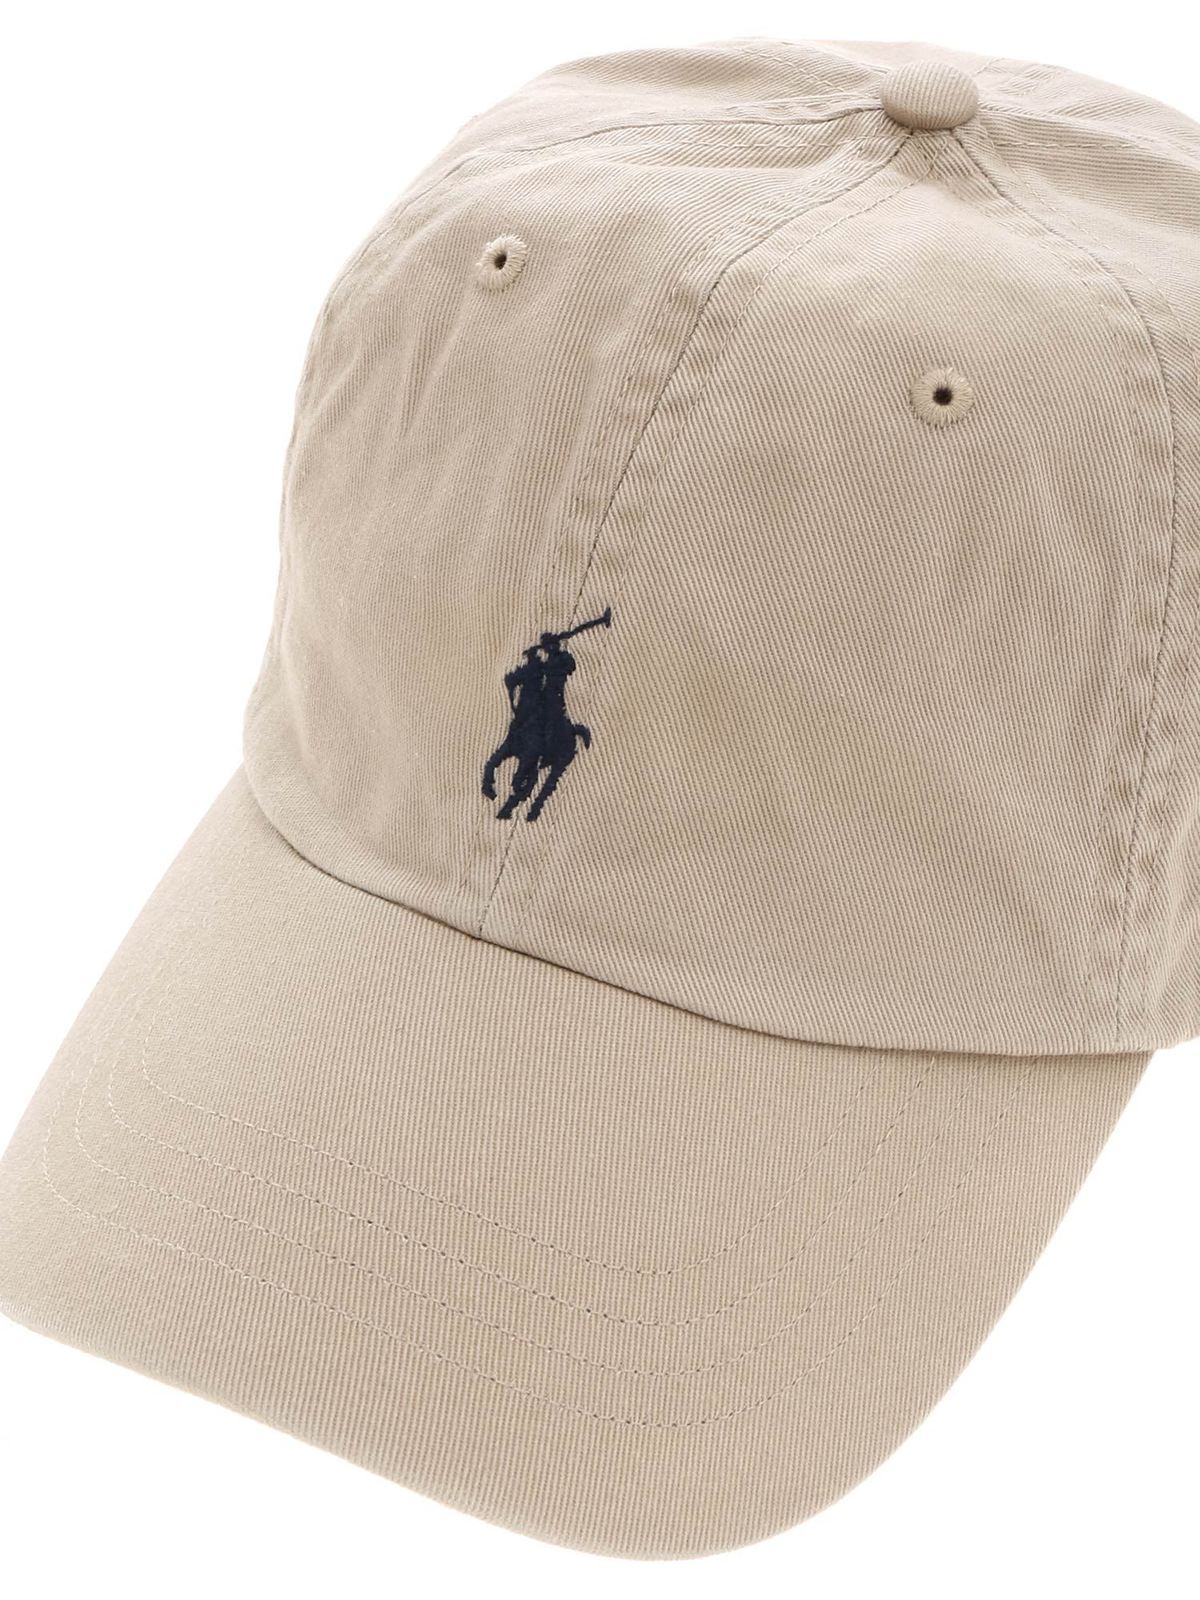 Hats & caps Polo Ralph Lauren - Baseball cap in beige with logo -  710548524005